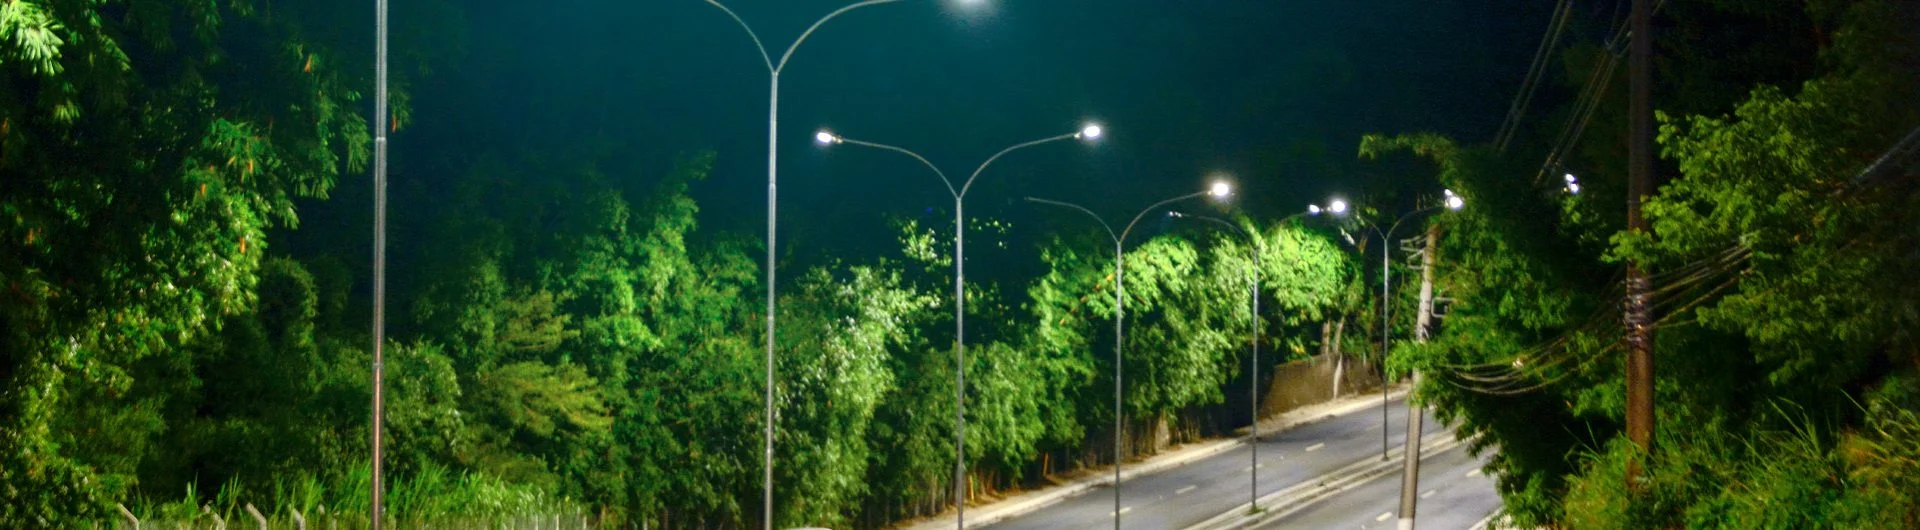 A iluminação como ferramenta de seguraça nos espaços públicos